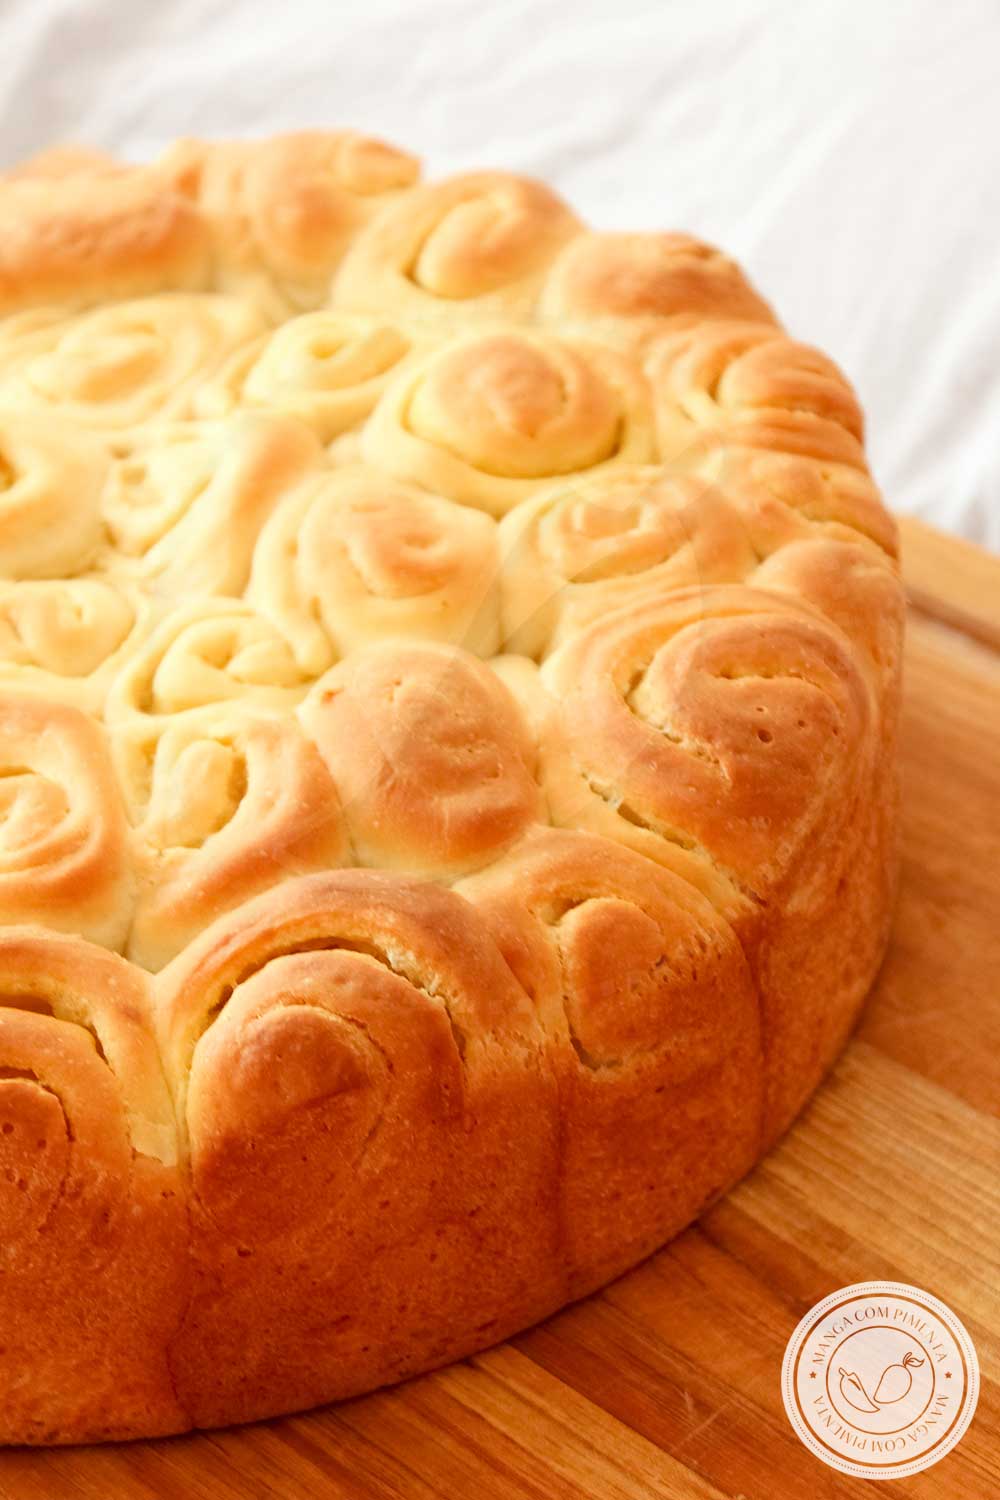 Receita de Pão Caracol ou Enroladinho com Manteiga - um pão quentinho para o café da manhã ou da tarde.